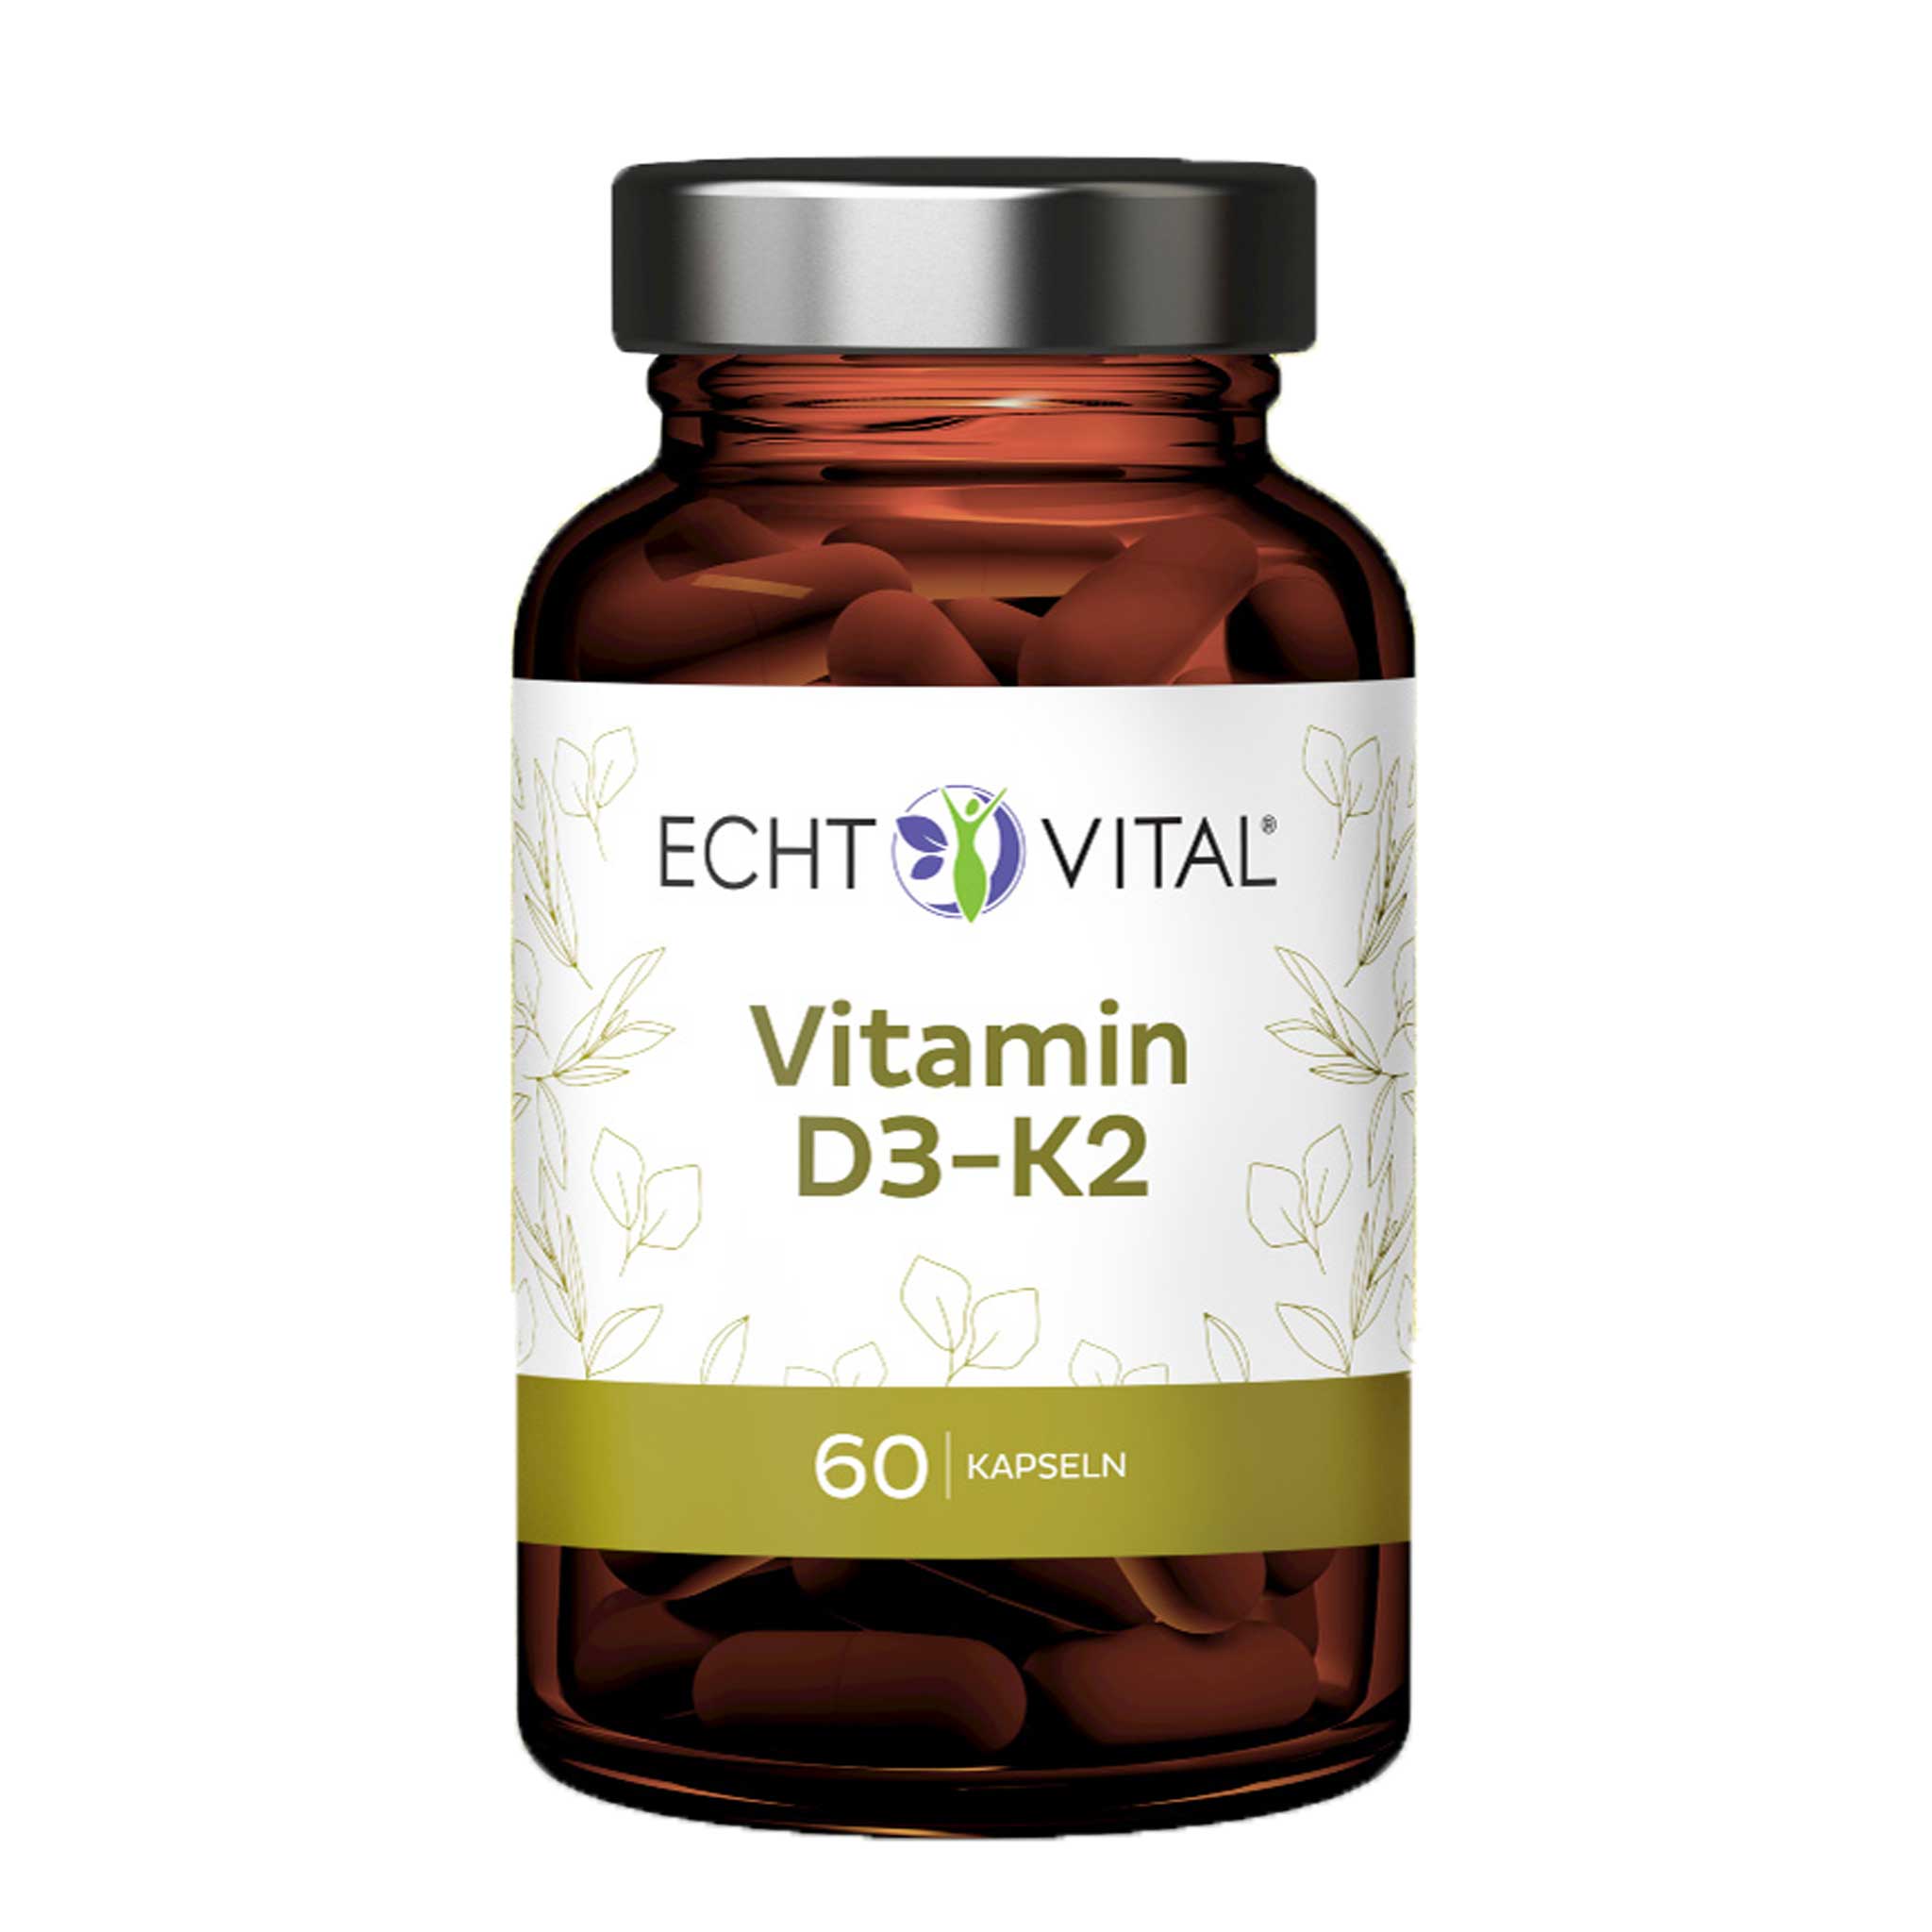 Vitamin D3-K2 von Echt Vital beinhaltet 60 Kapseln